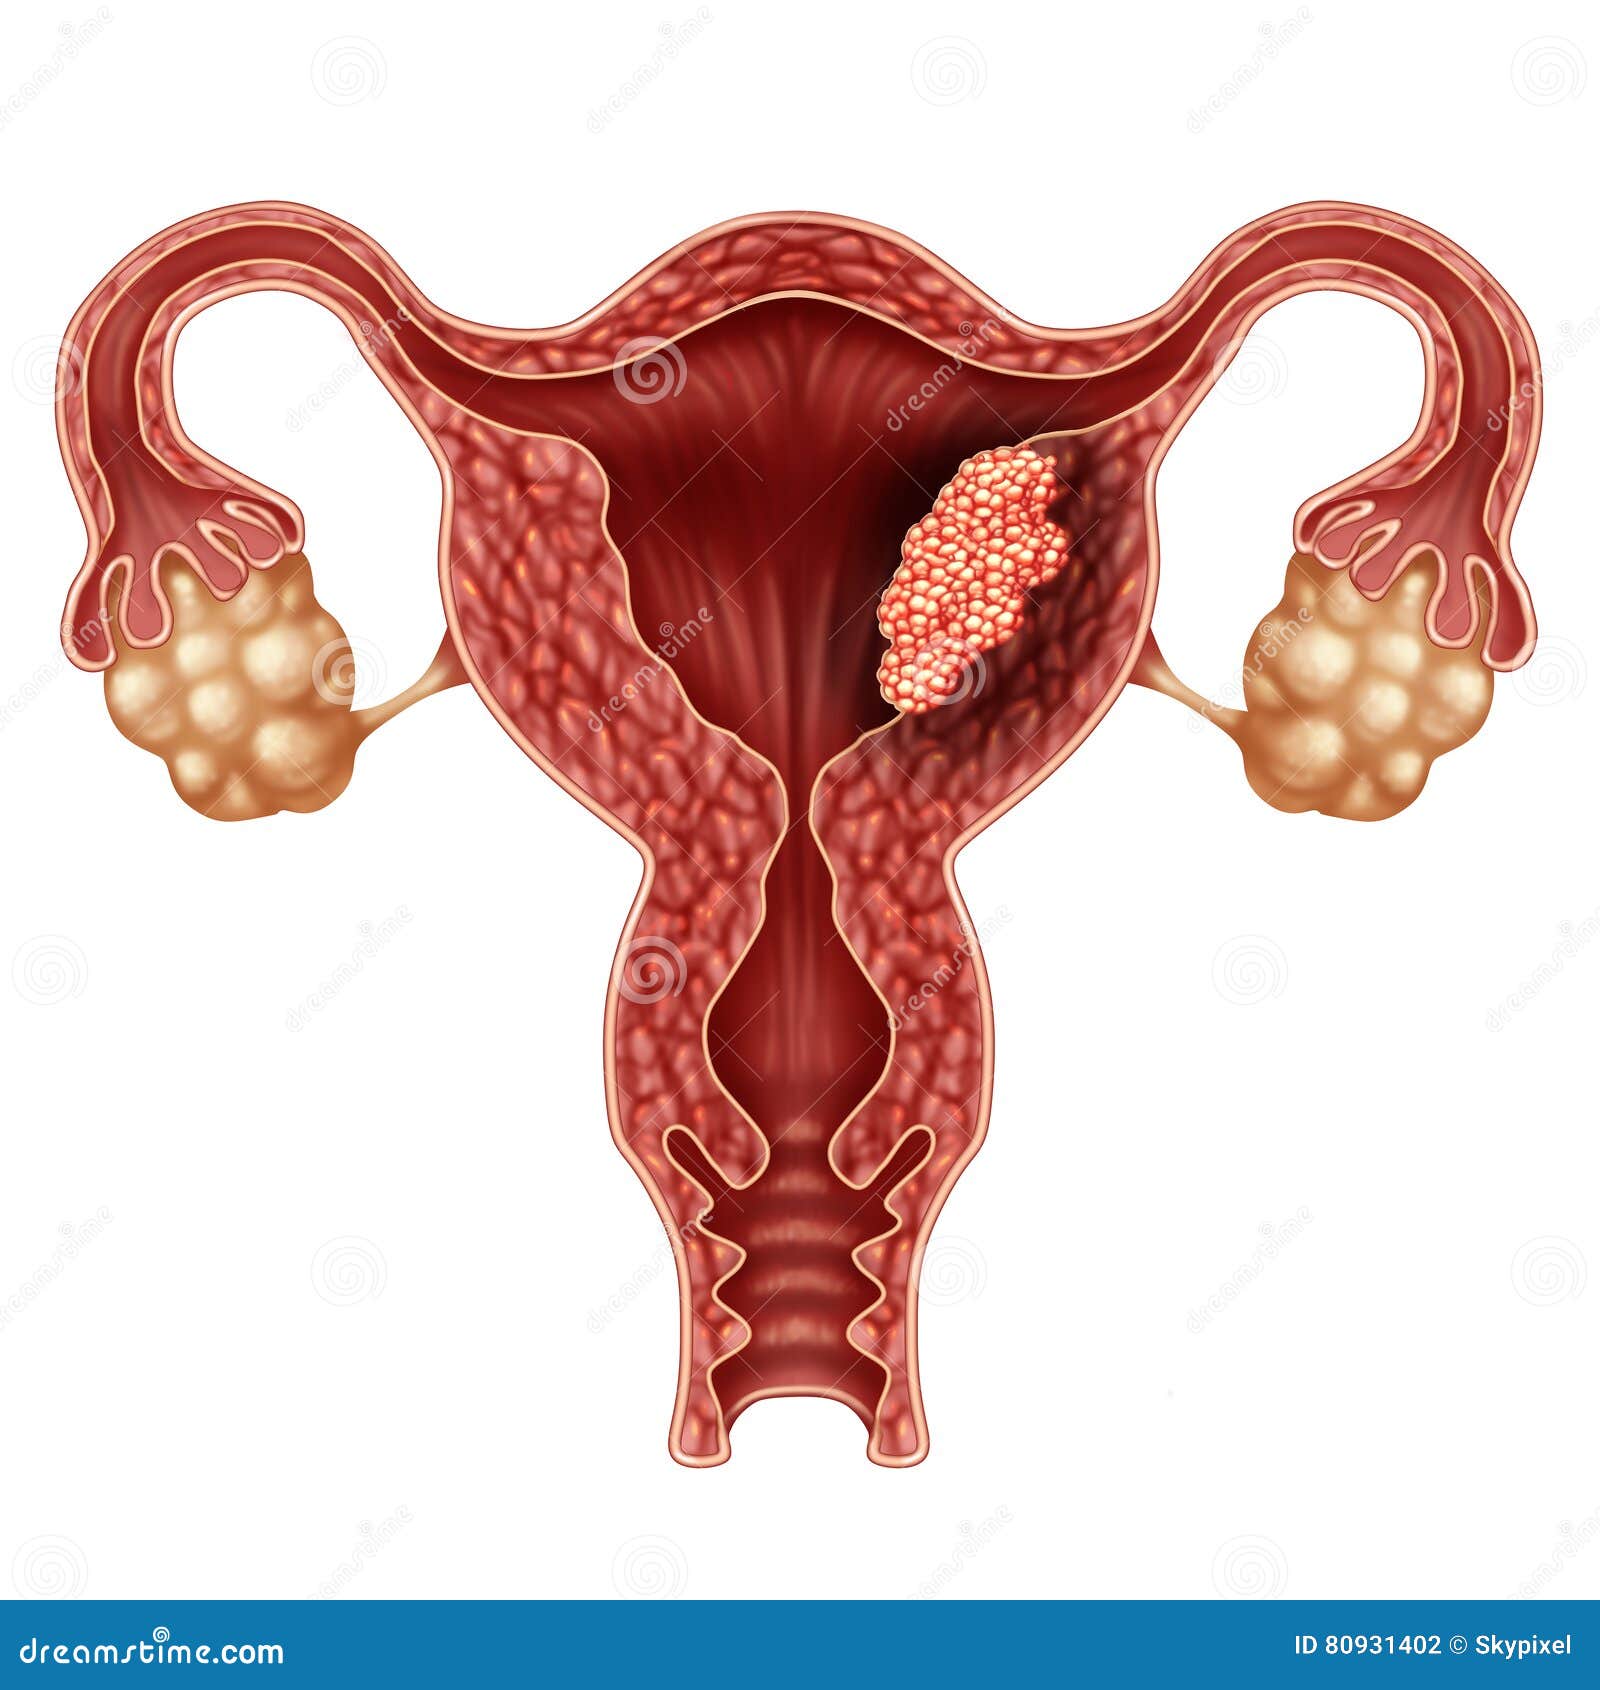 cancer endometrial speranta de viata)